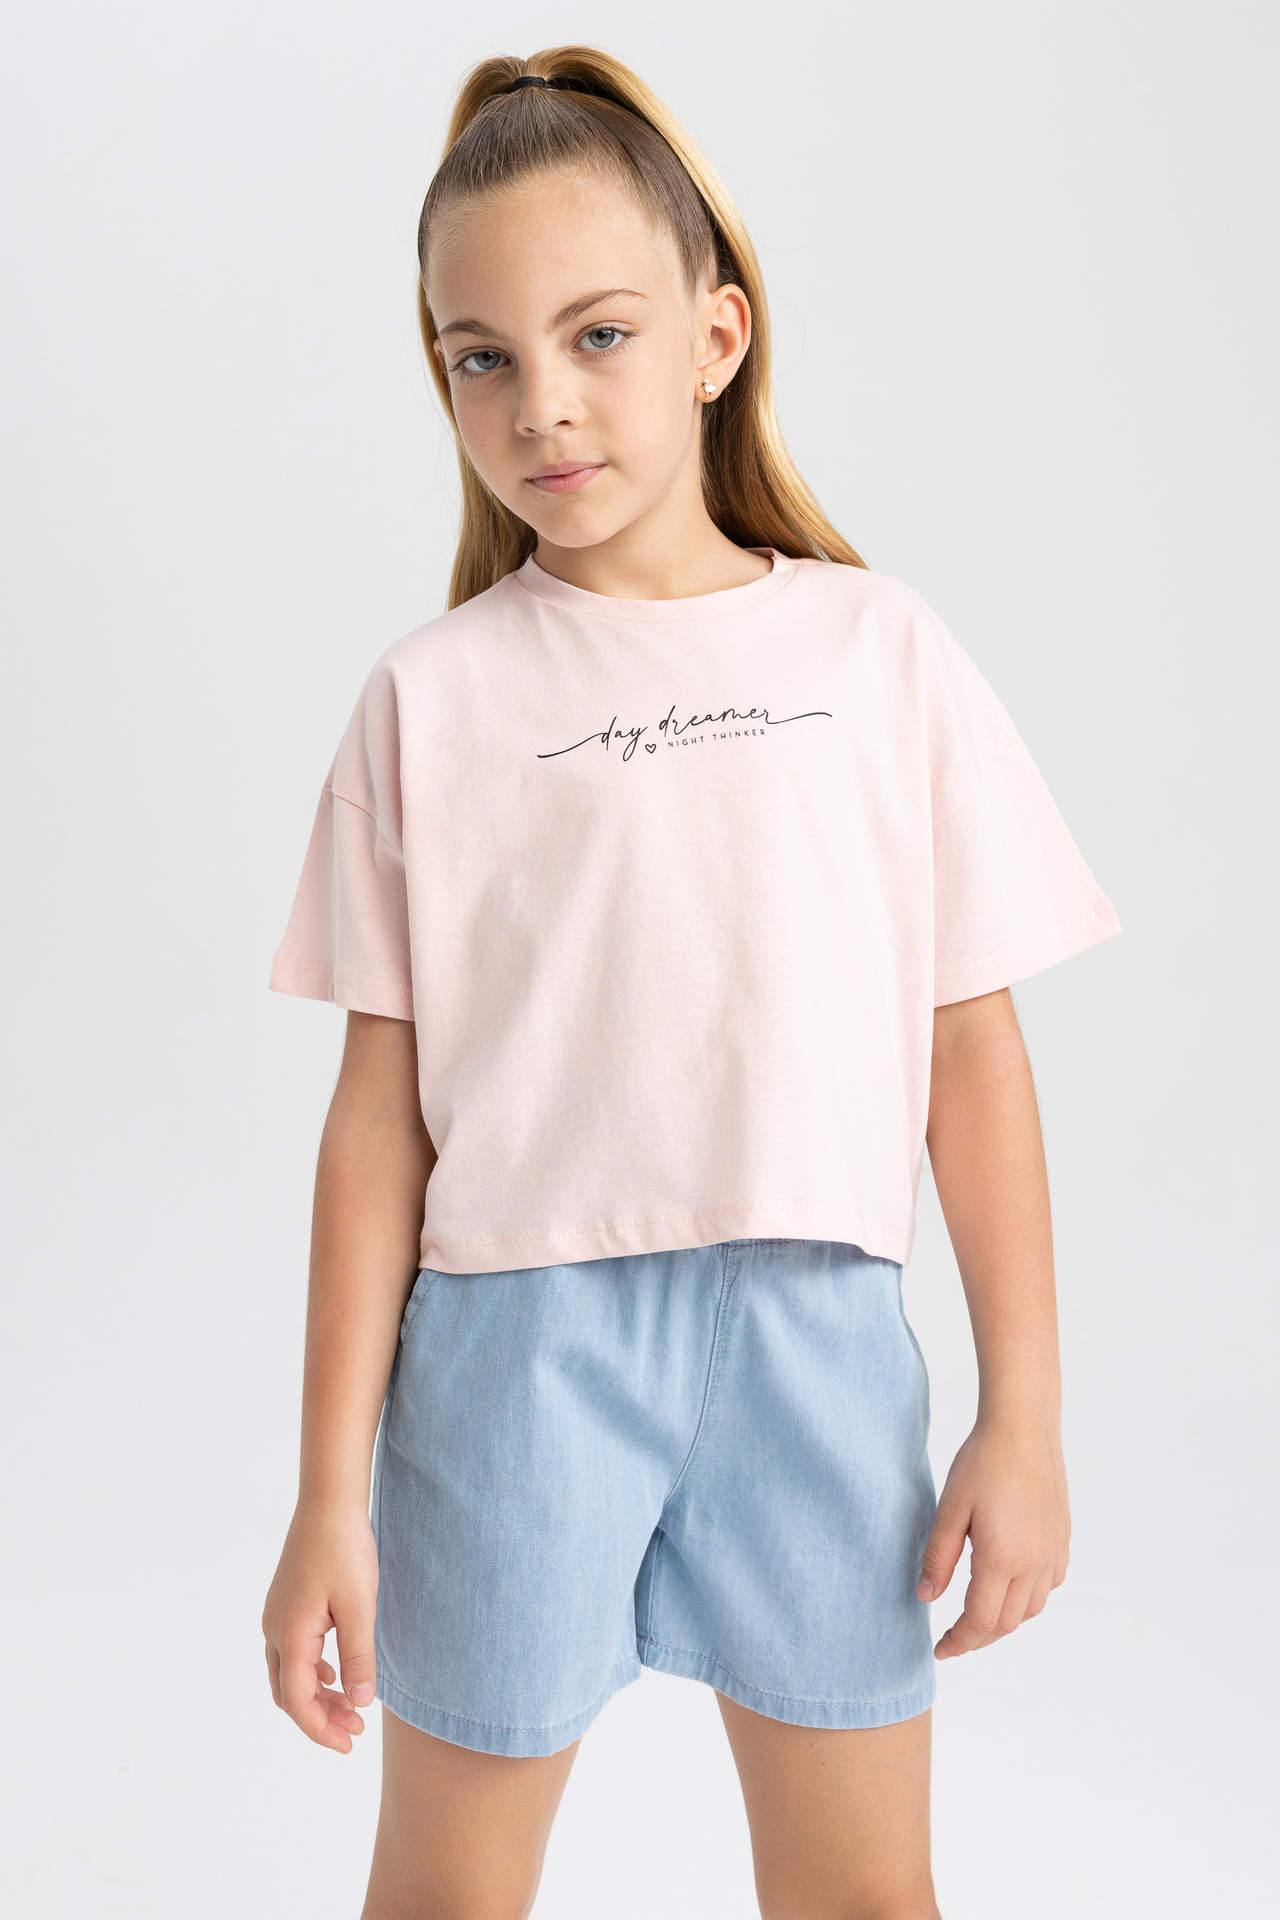 DEFACTO Girl Crop Short Sleeve T-Shirt